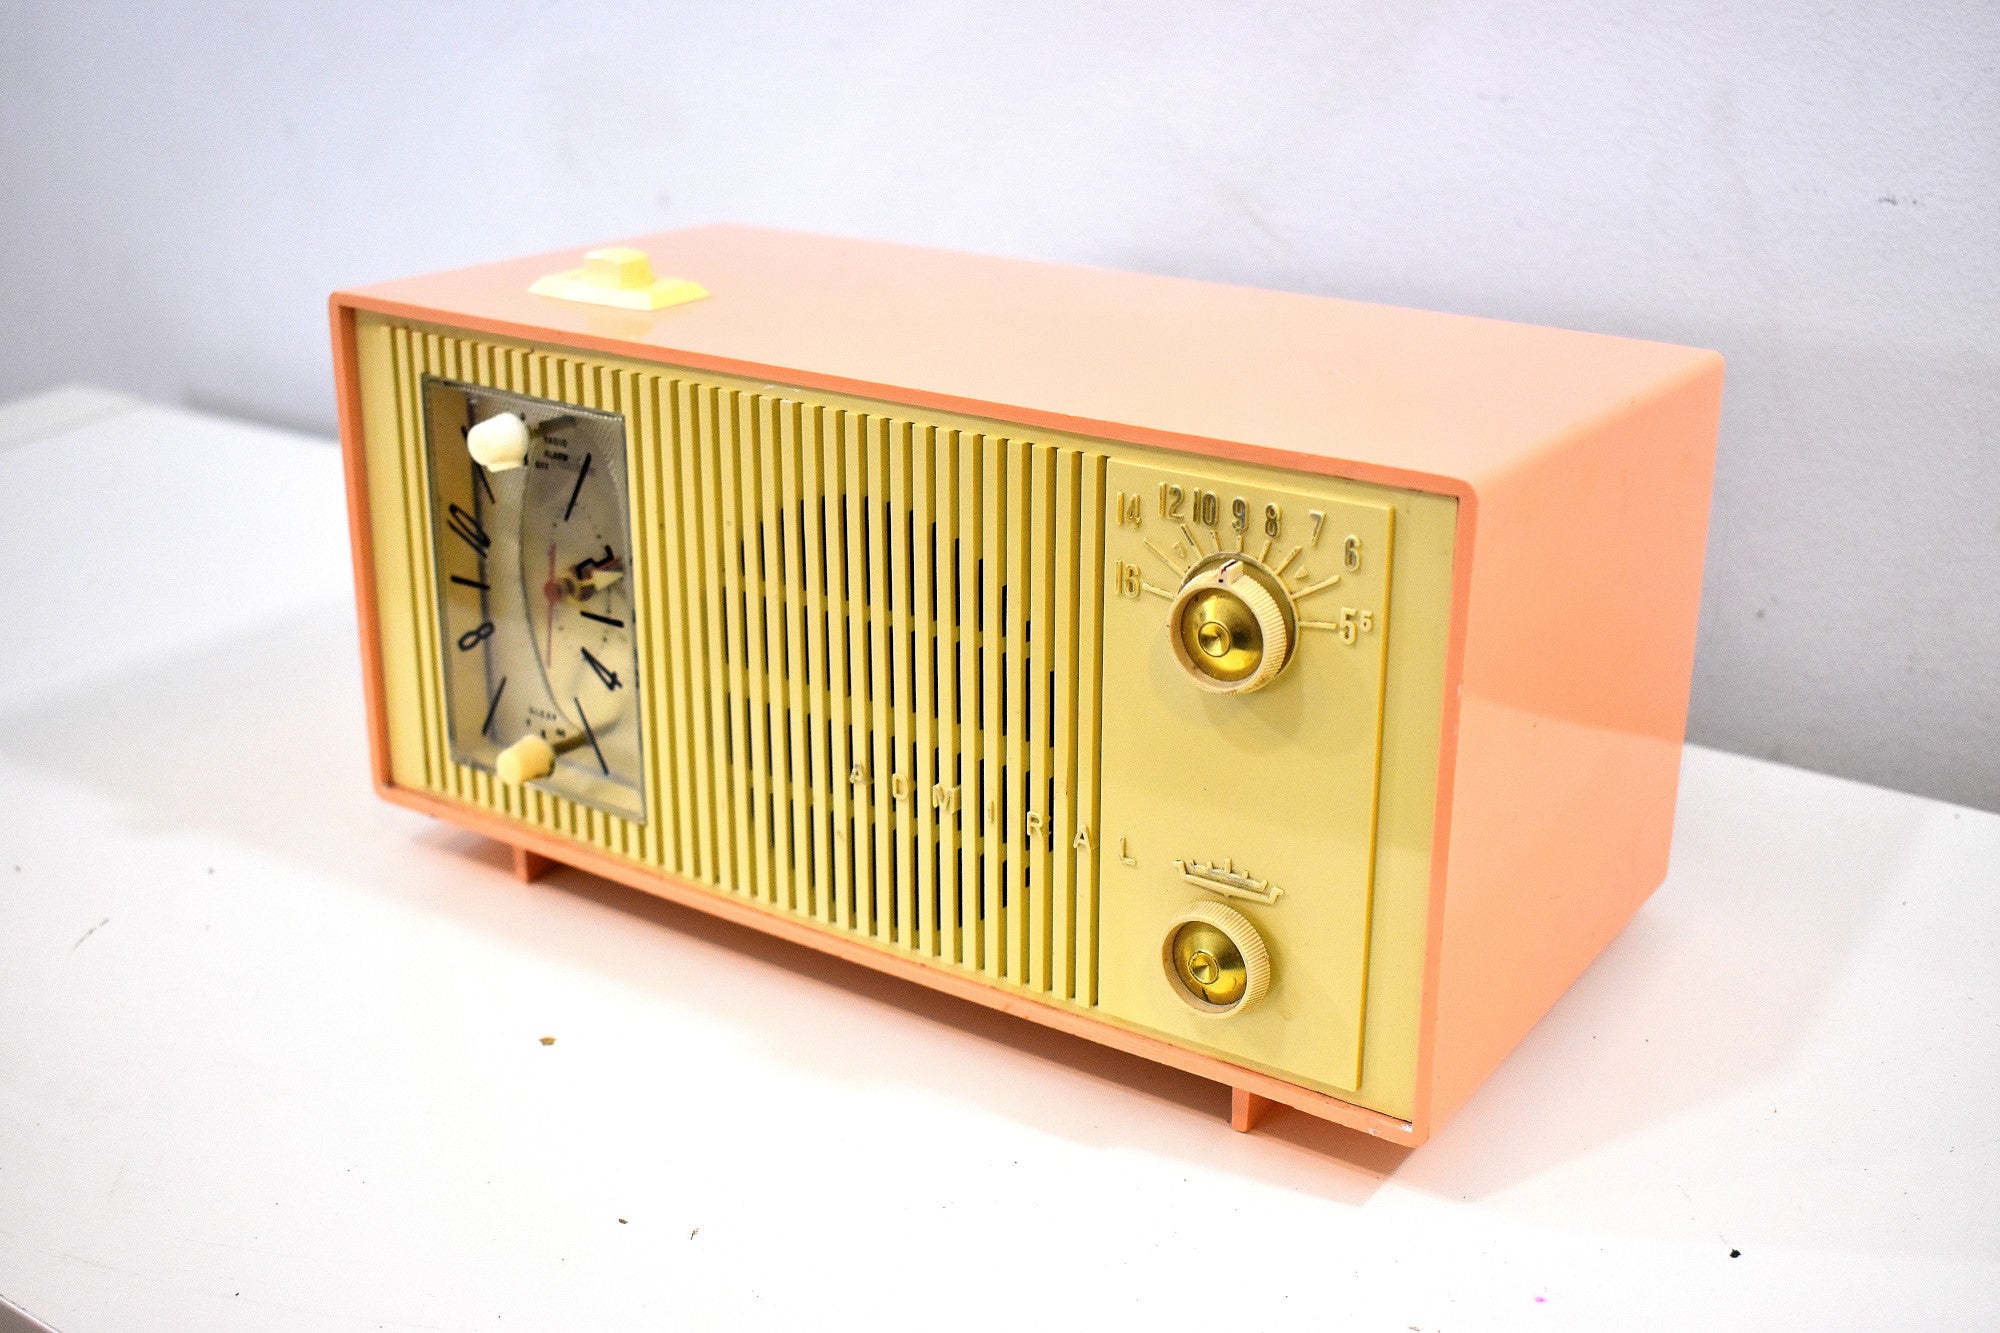 Bluetooth 準備完了 - ピーチ クリーム 1959 アドミラル モデル Y865C 真空管 AM ラジオのサウンドは素晴らしいです。素晴らしく見える！